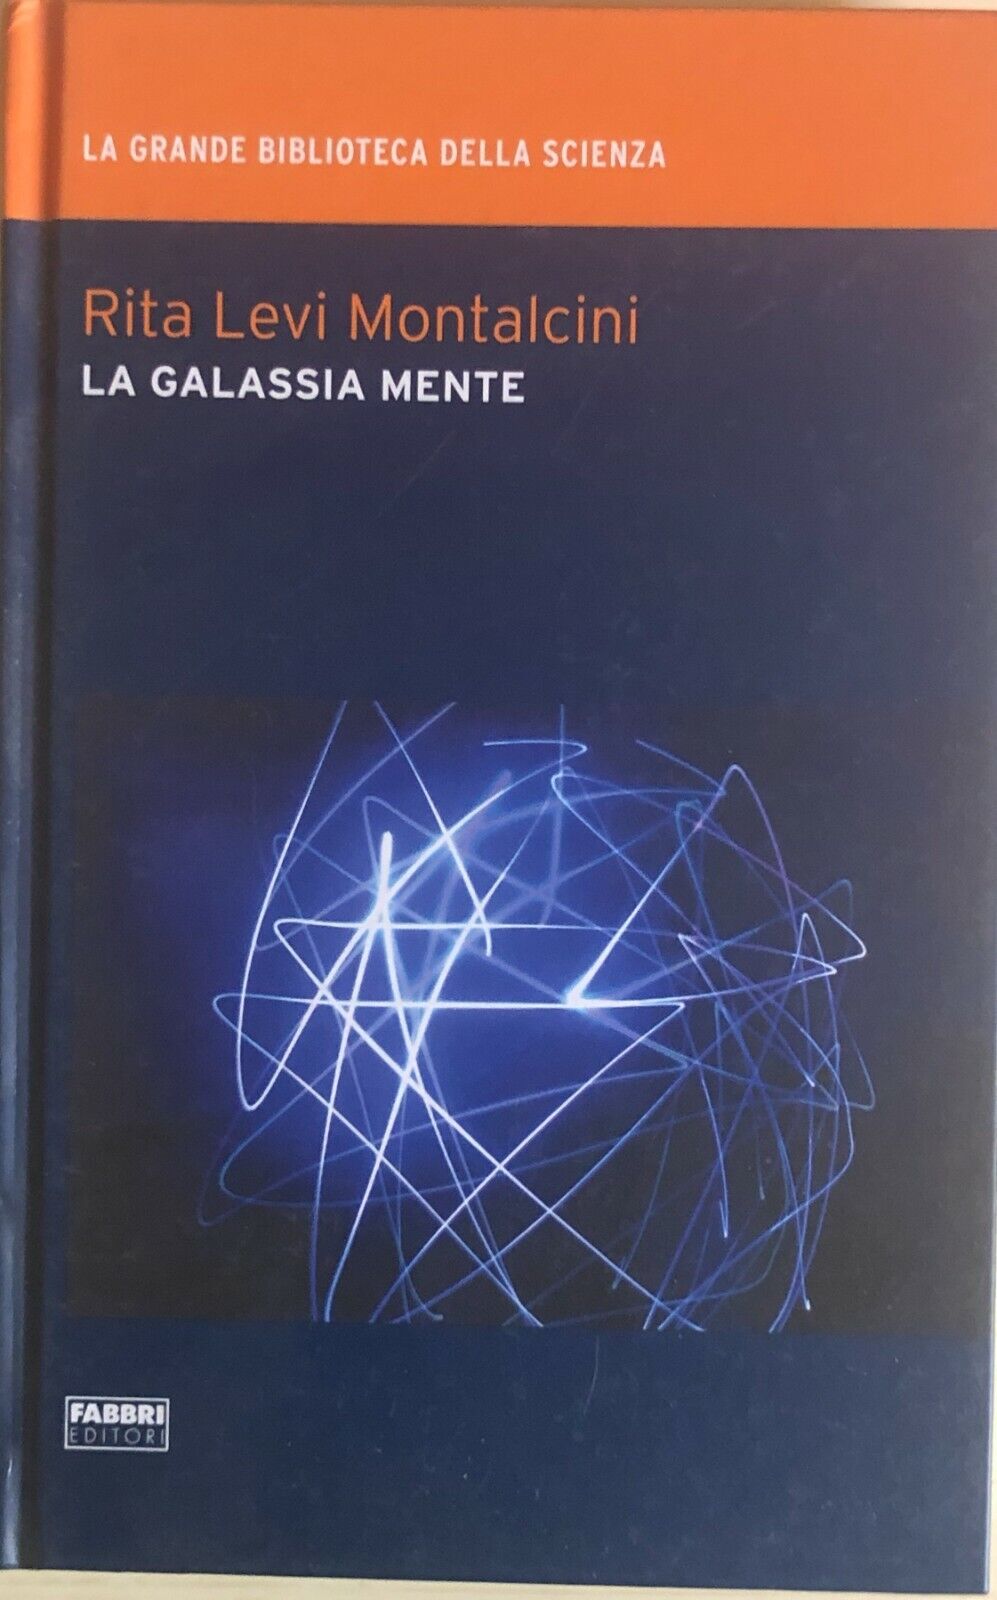 La galassia mente di Rita Levi Montalcini, 2009, Fabbri editori